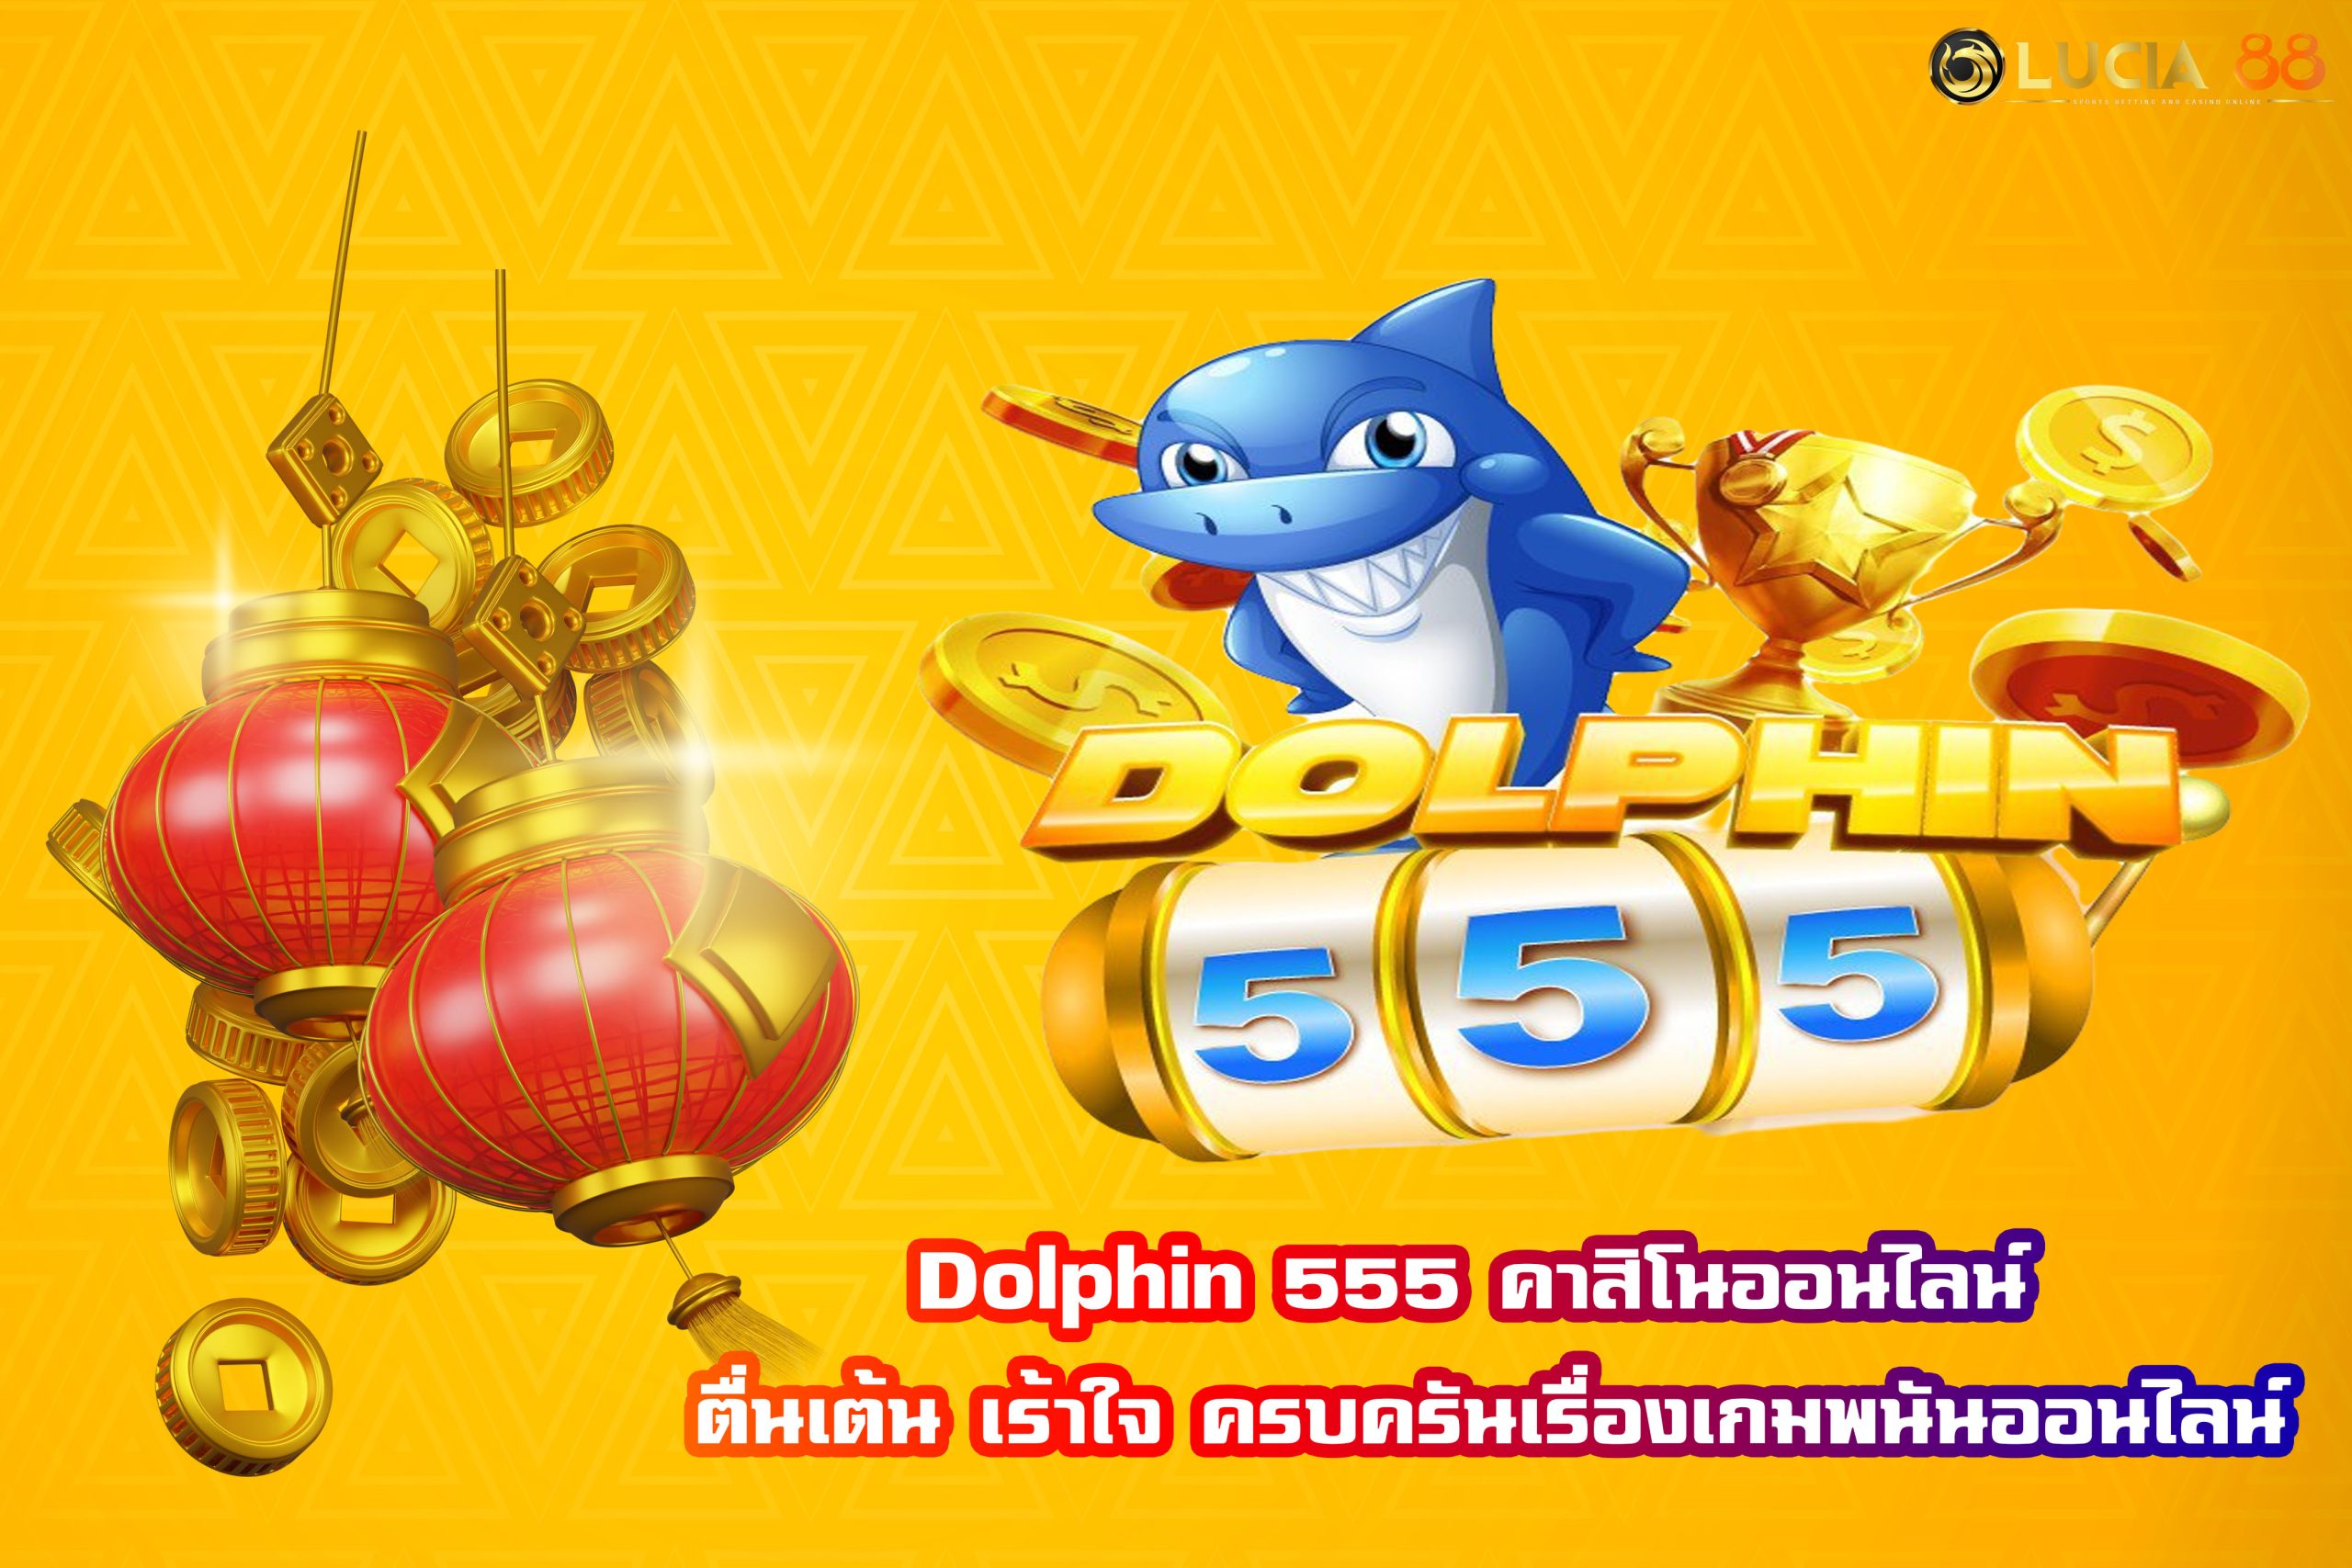 Dolphin 555 คาสิโนออนไลน์ ตื่นเต้น เร้าใจ ครบครันเรื่องเกมพนันออนไลน์